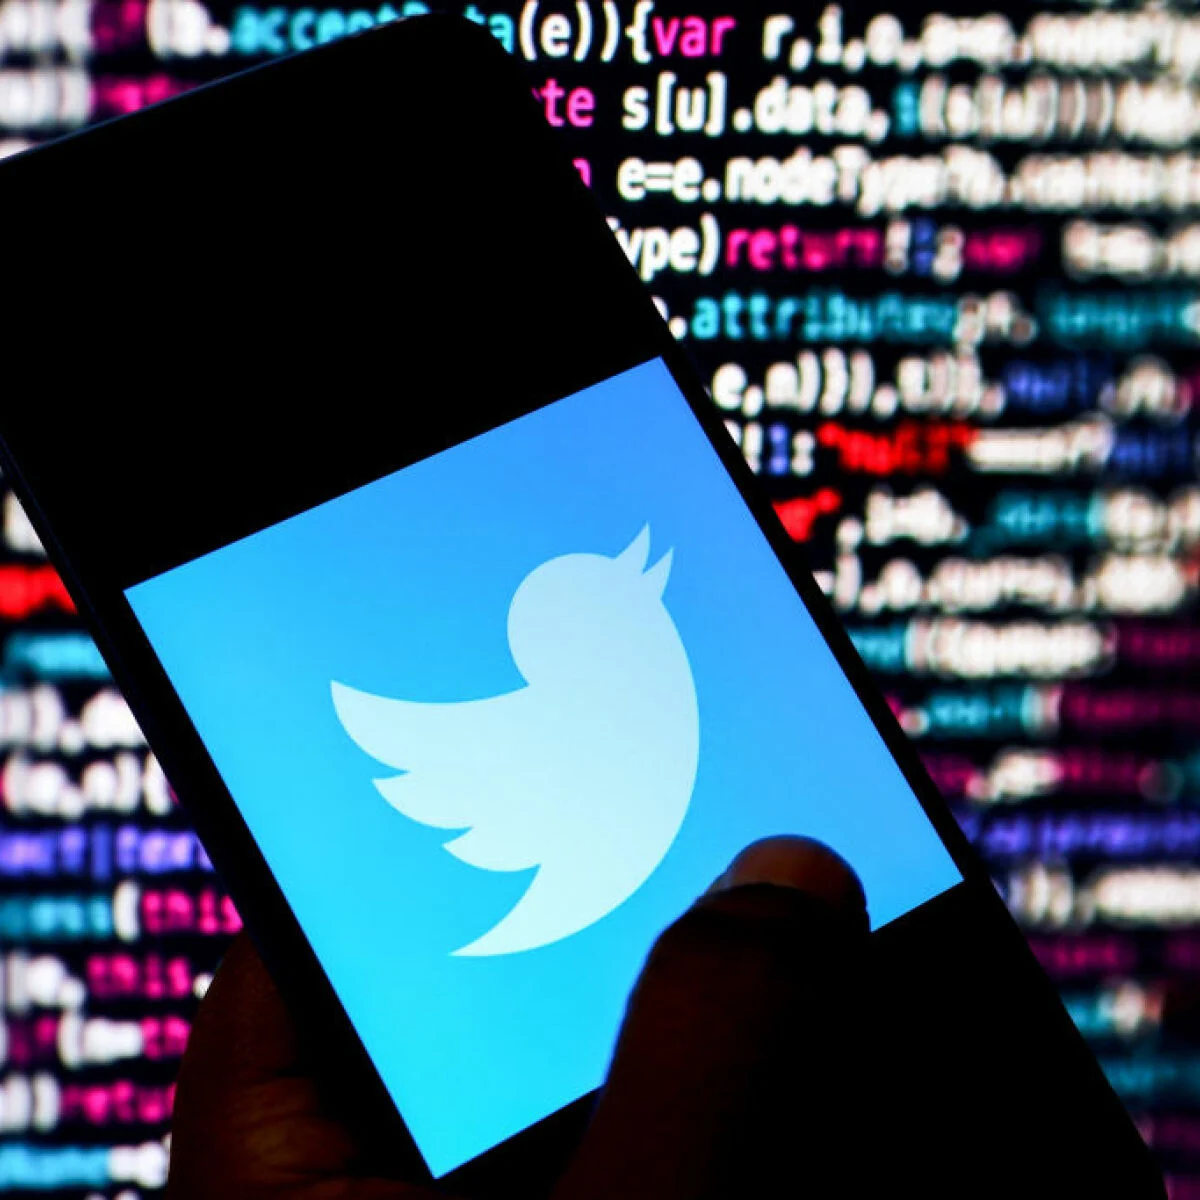 Nóng: Tin tặc cho tải miễn phí 235 triệu tài khoản Twitter cùng địa chỉ email liên kết - Twitter 1